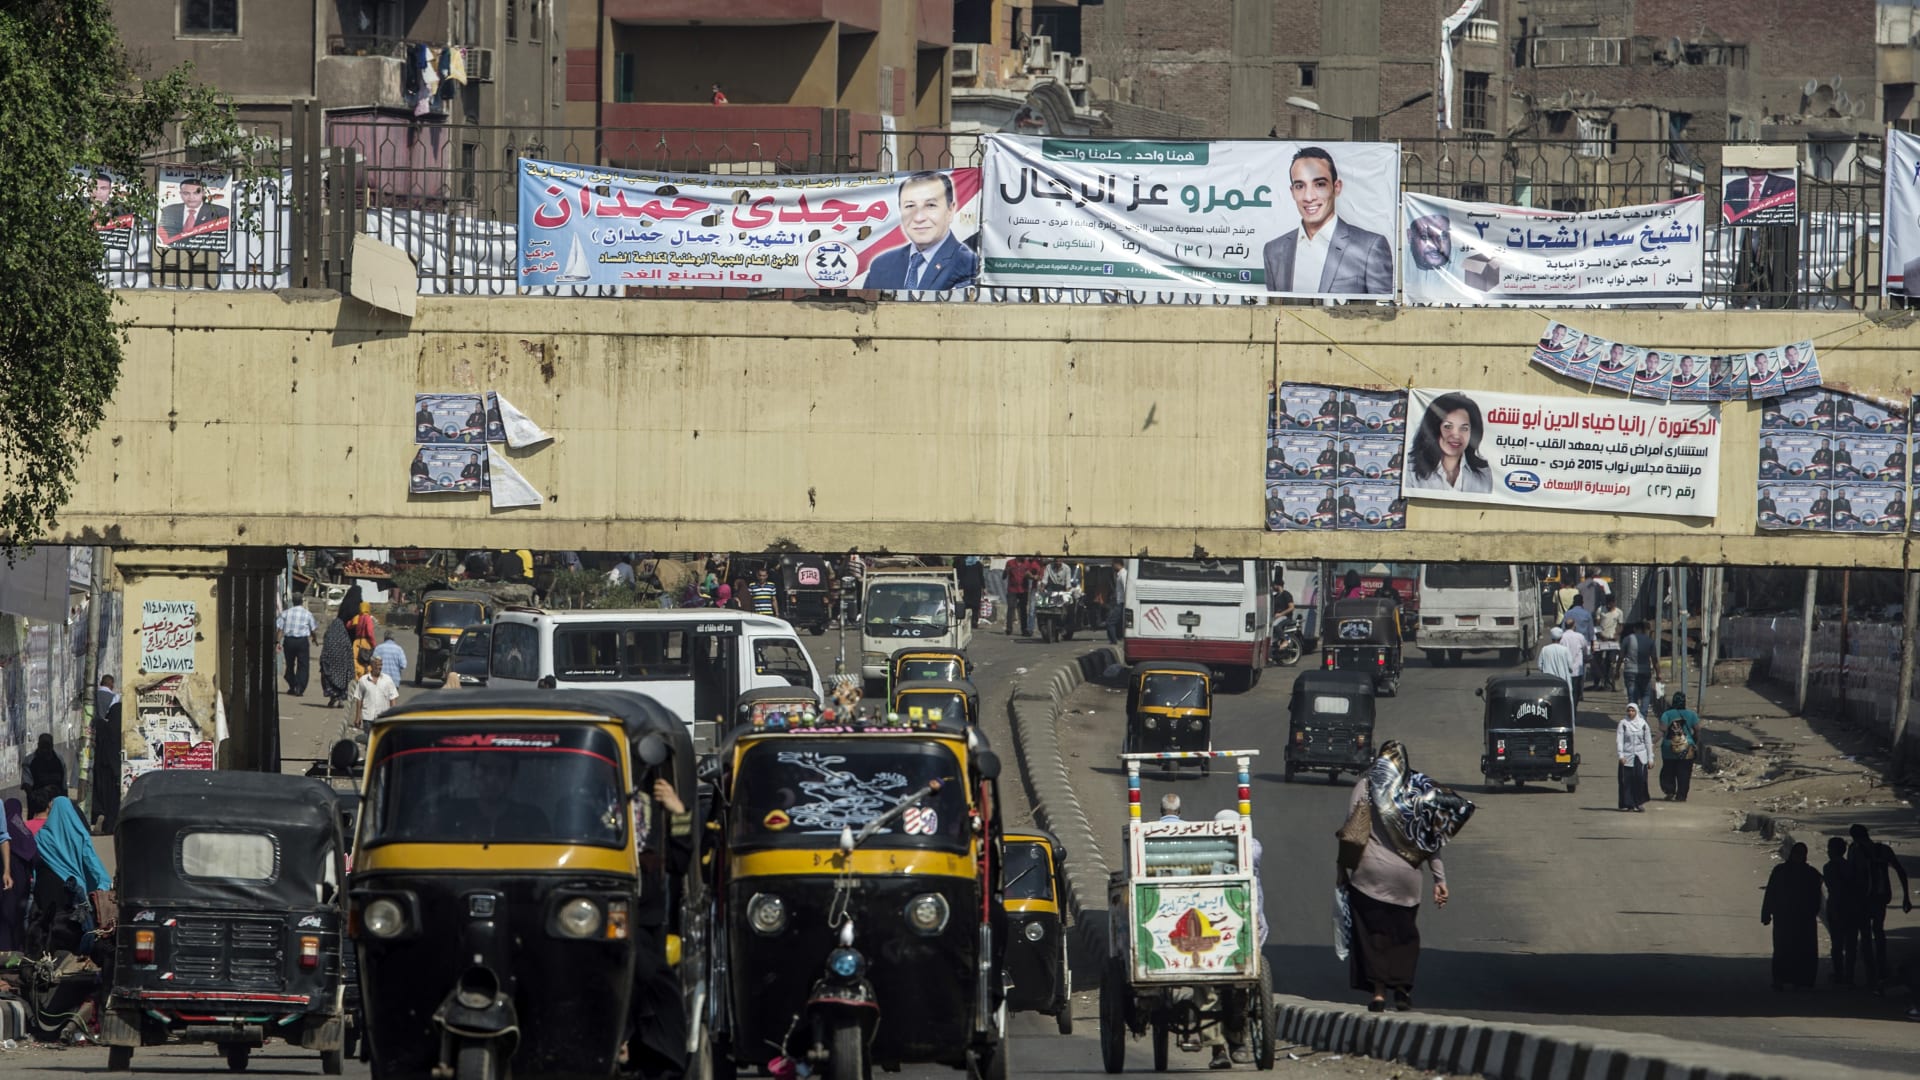 كم ستكلف حزمة الإجراءات الاجتماعية التي أقرها السيسي موازنة مصر؟